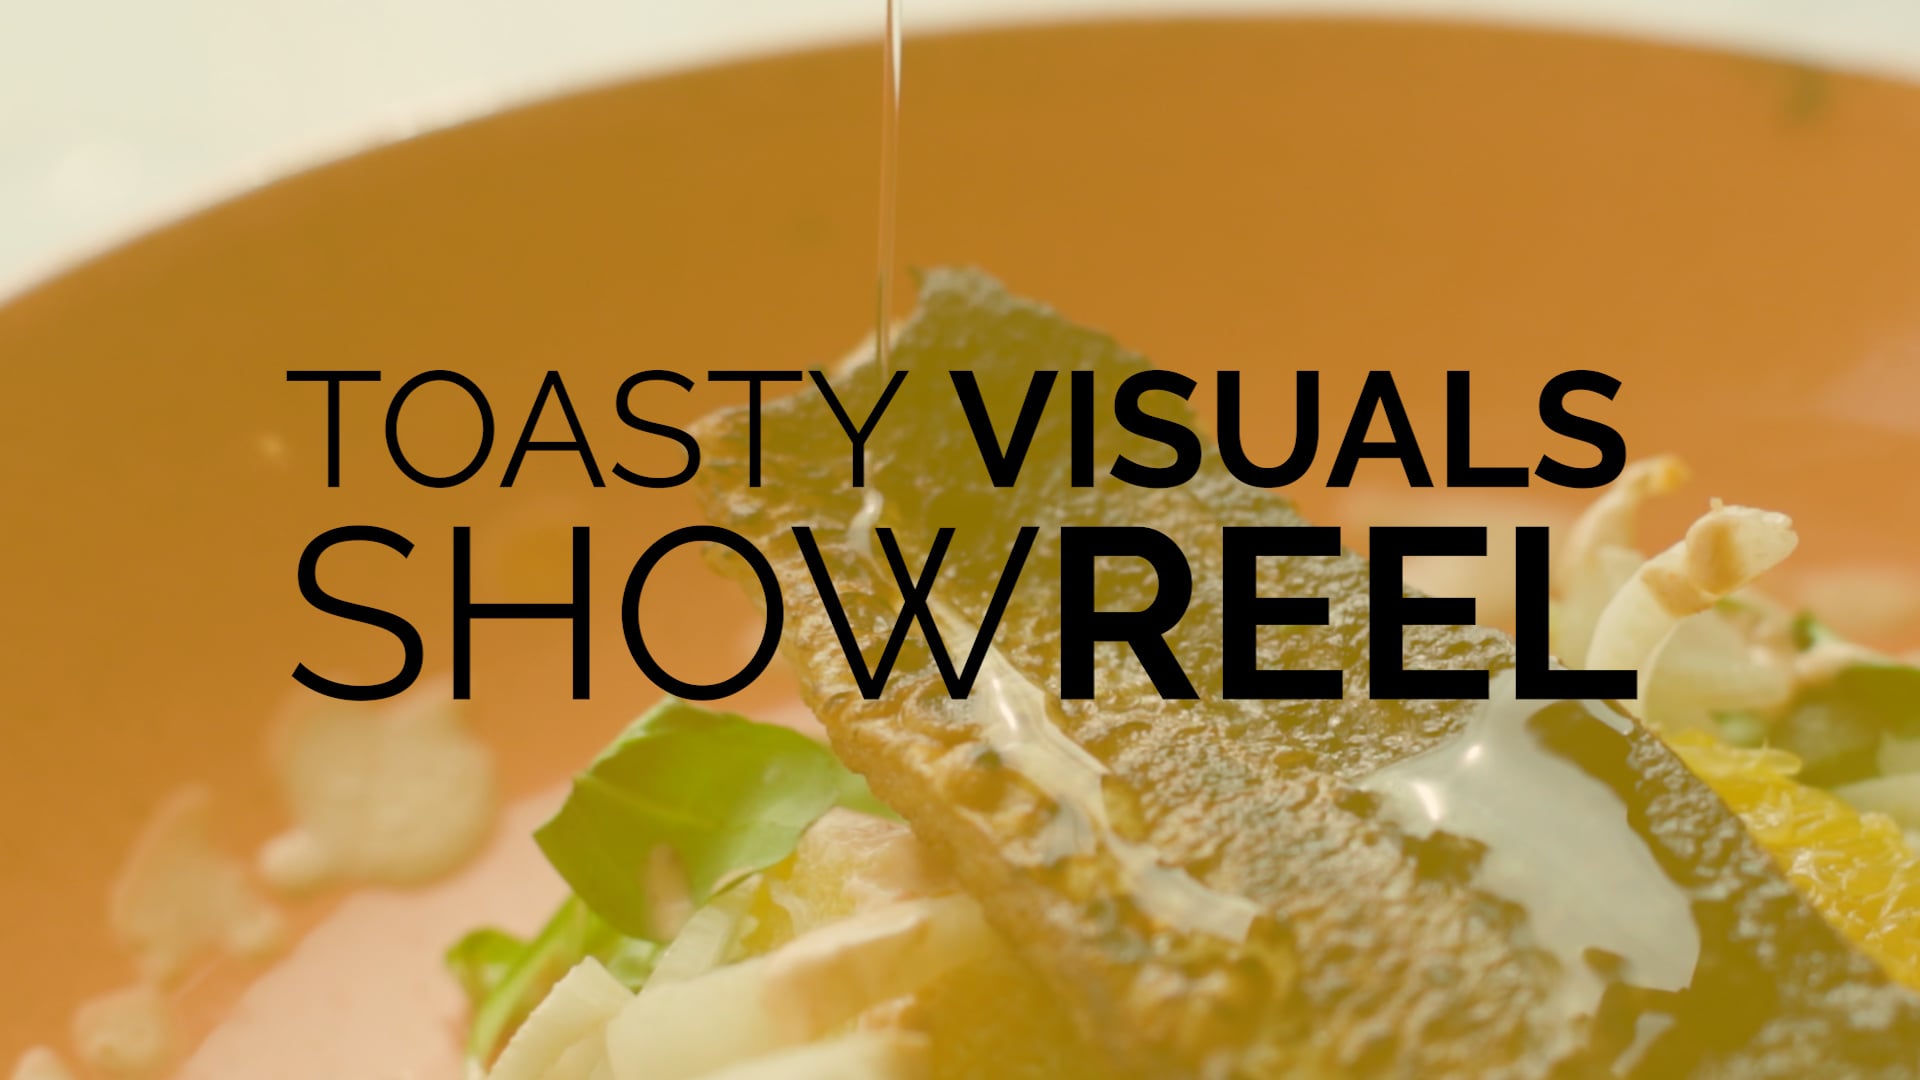 Toasty Visuals: Showreel